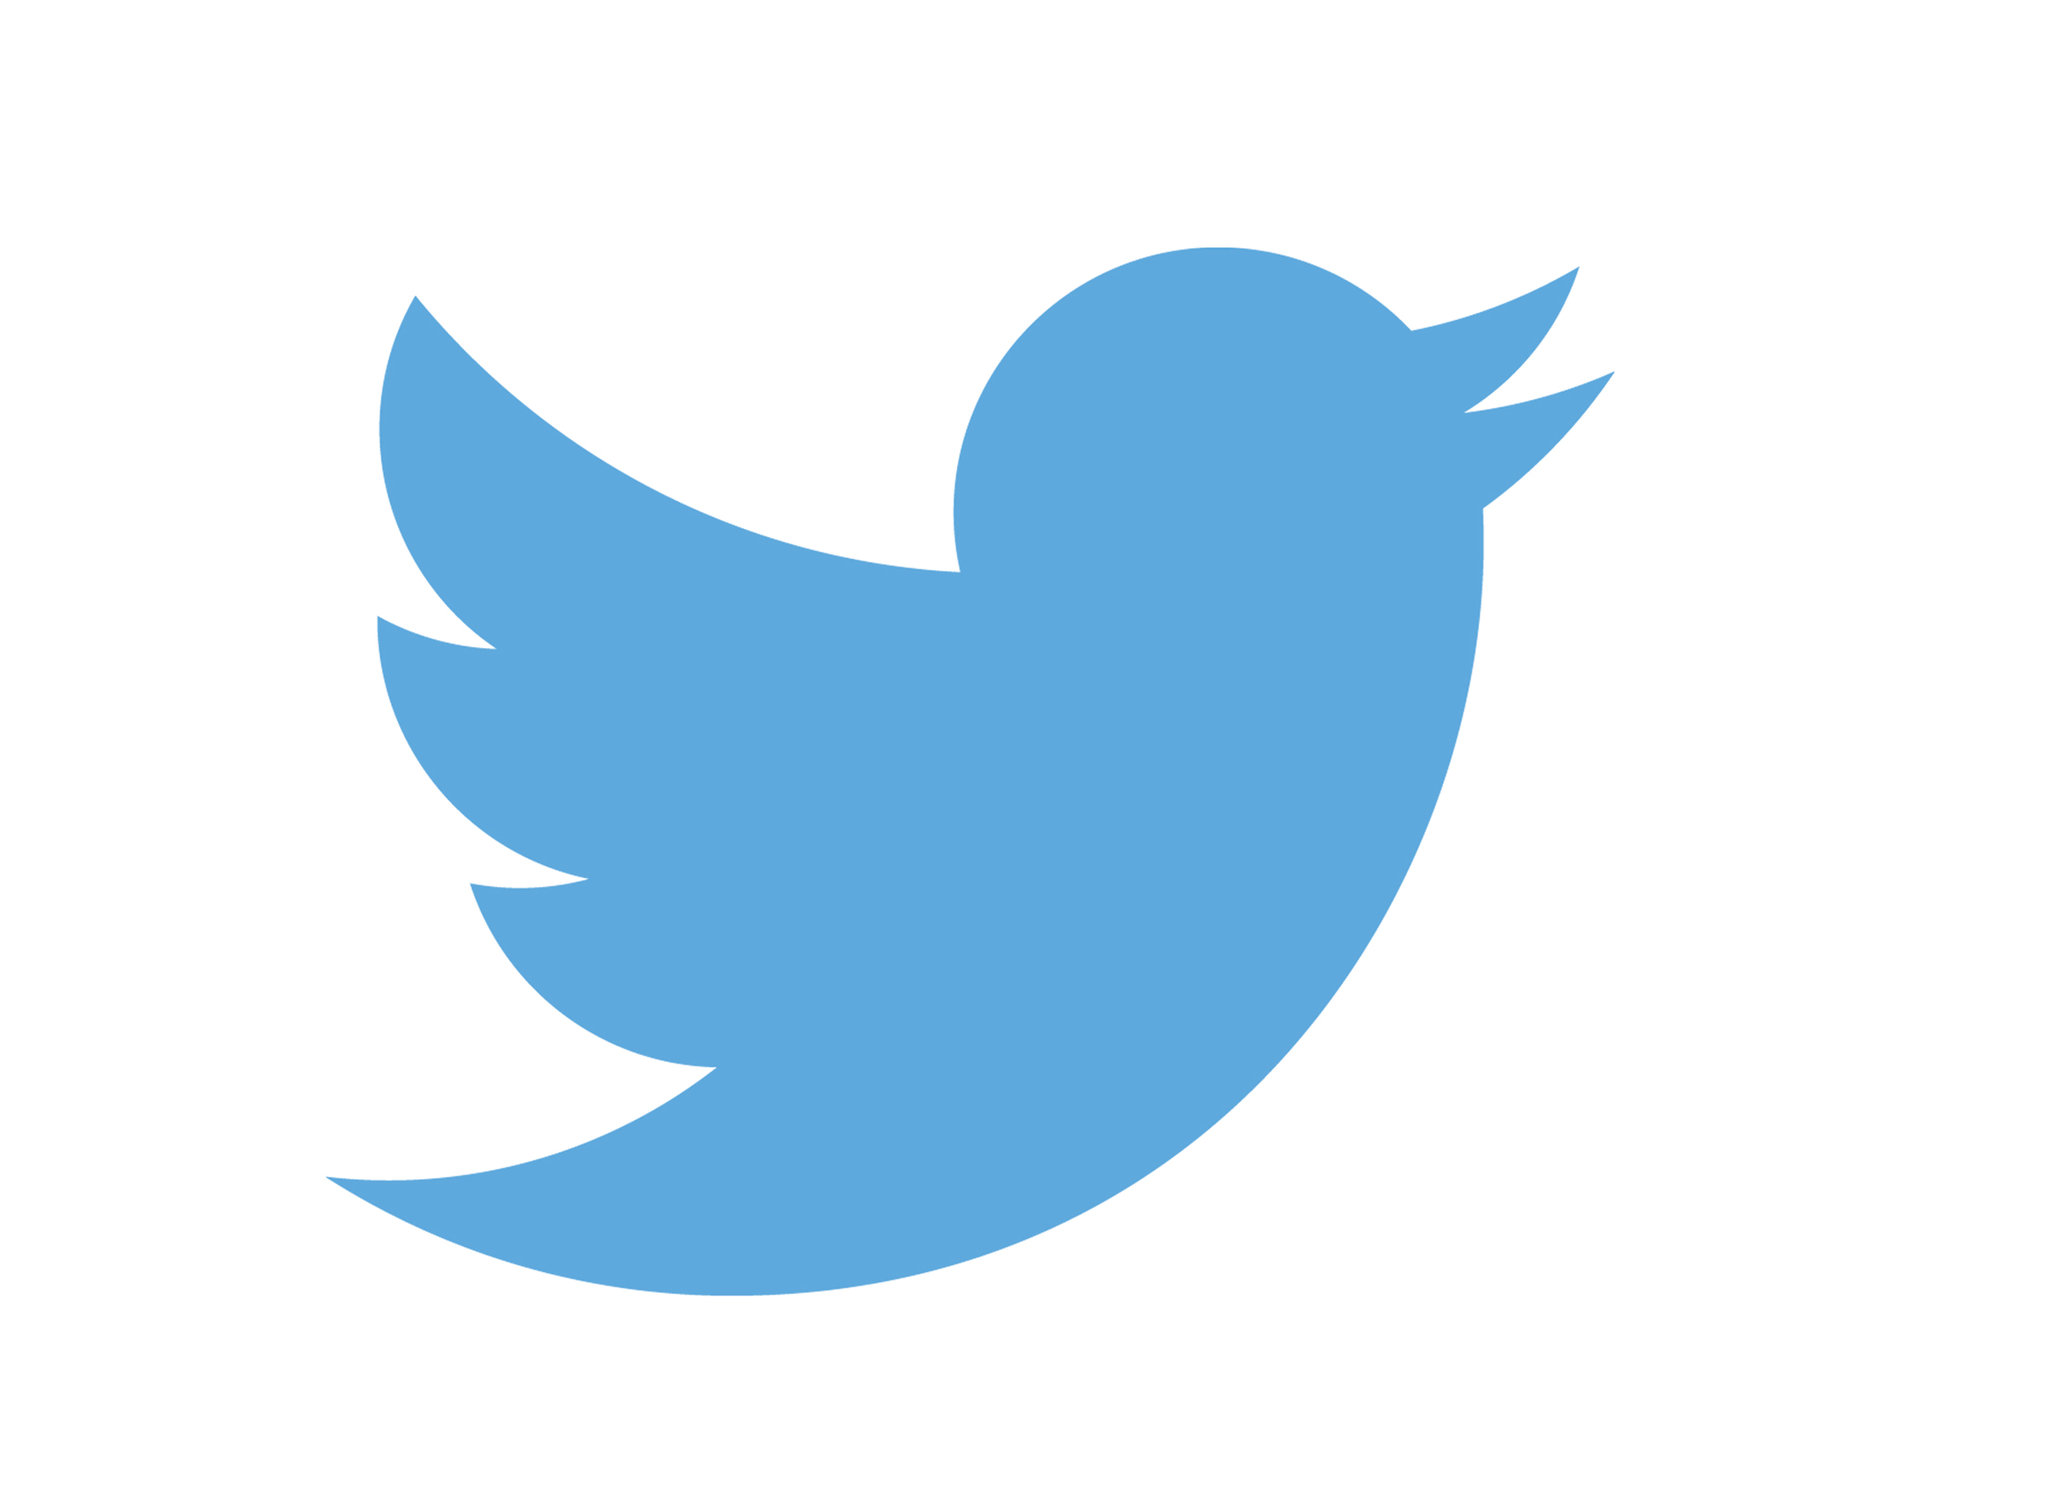 Републиканци приветстват придобиването на „Туитър“ от Илон Мъск, демократи виждат „заплаха за демокрацията“